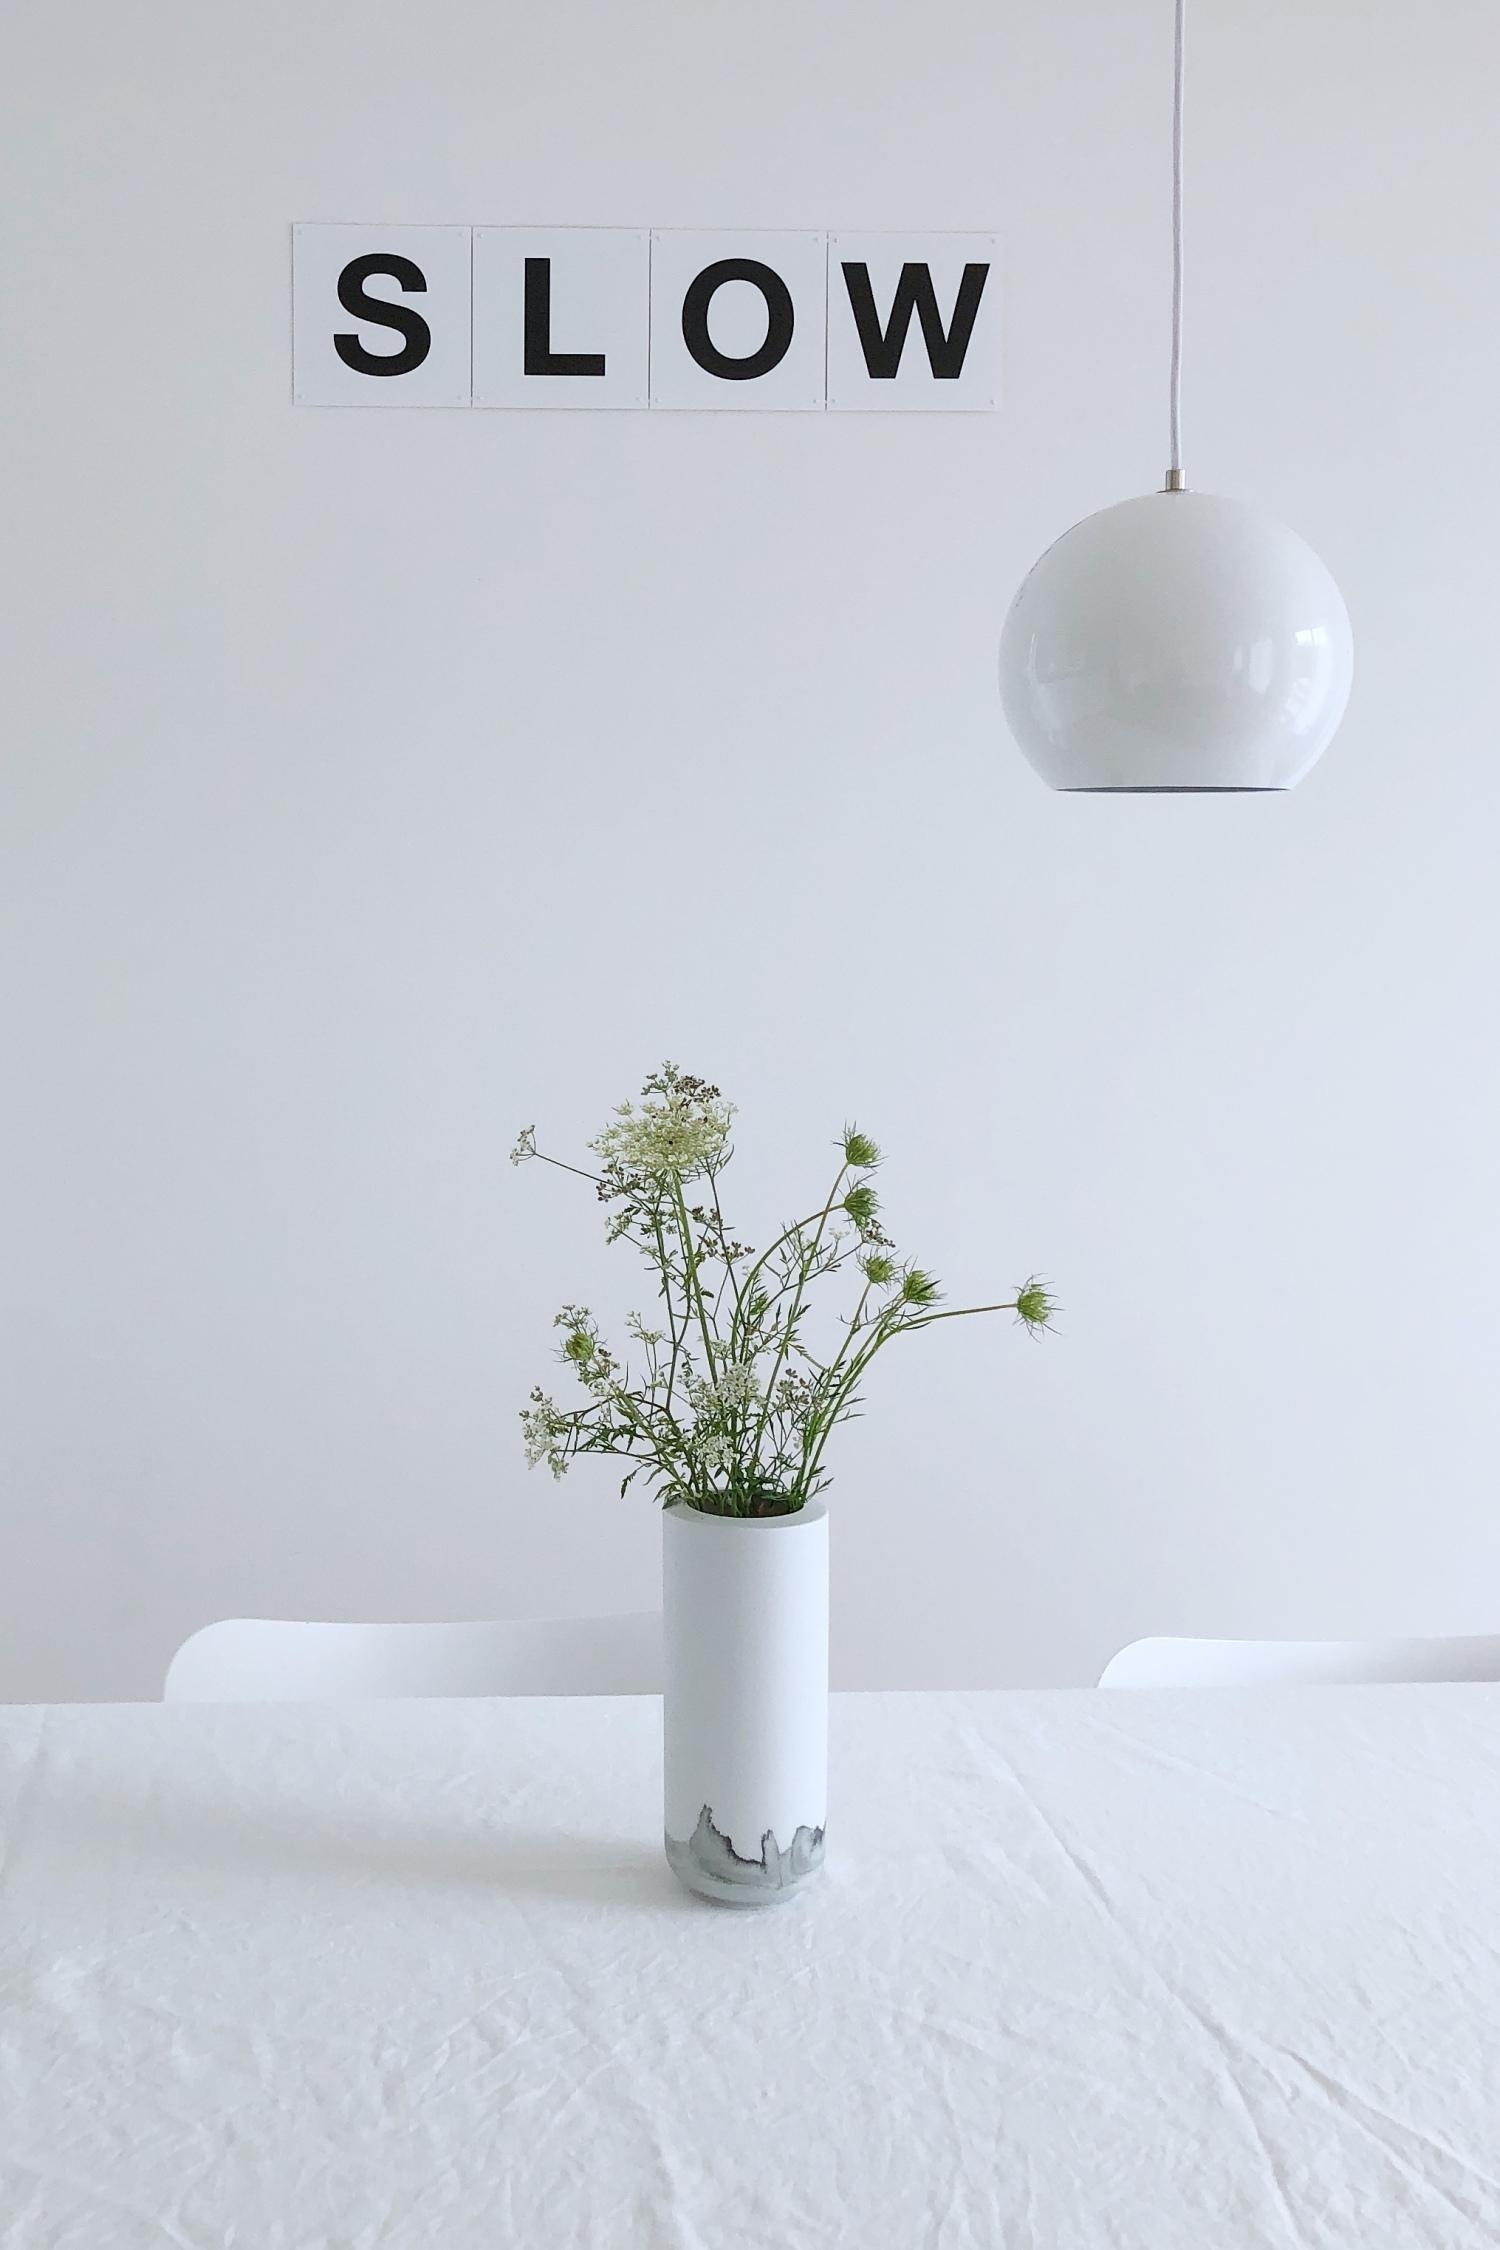 #slowliving #blumen #typo #porzellan #vase #weiß #esszimmer #minimalistisch #sommerblumen